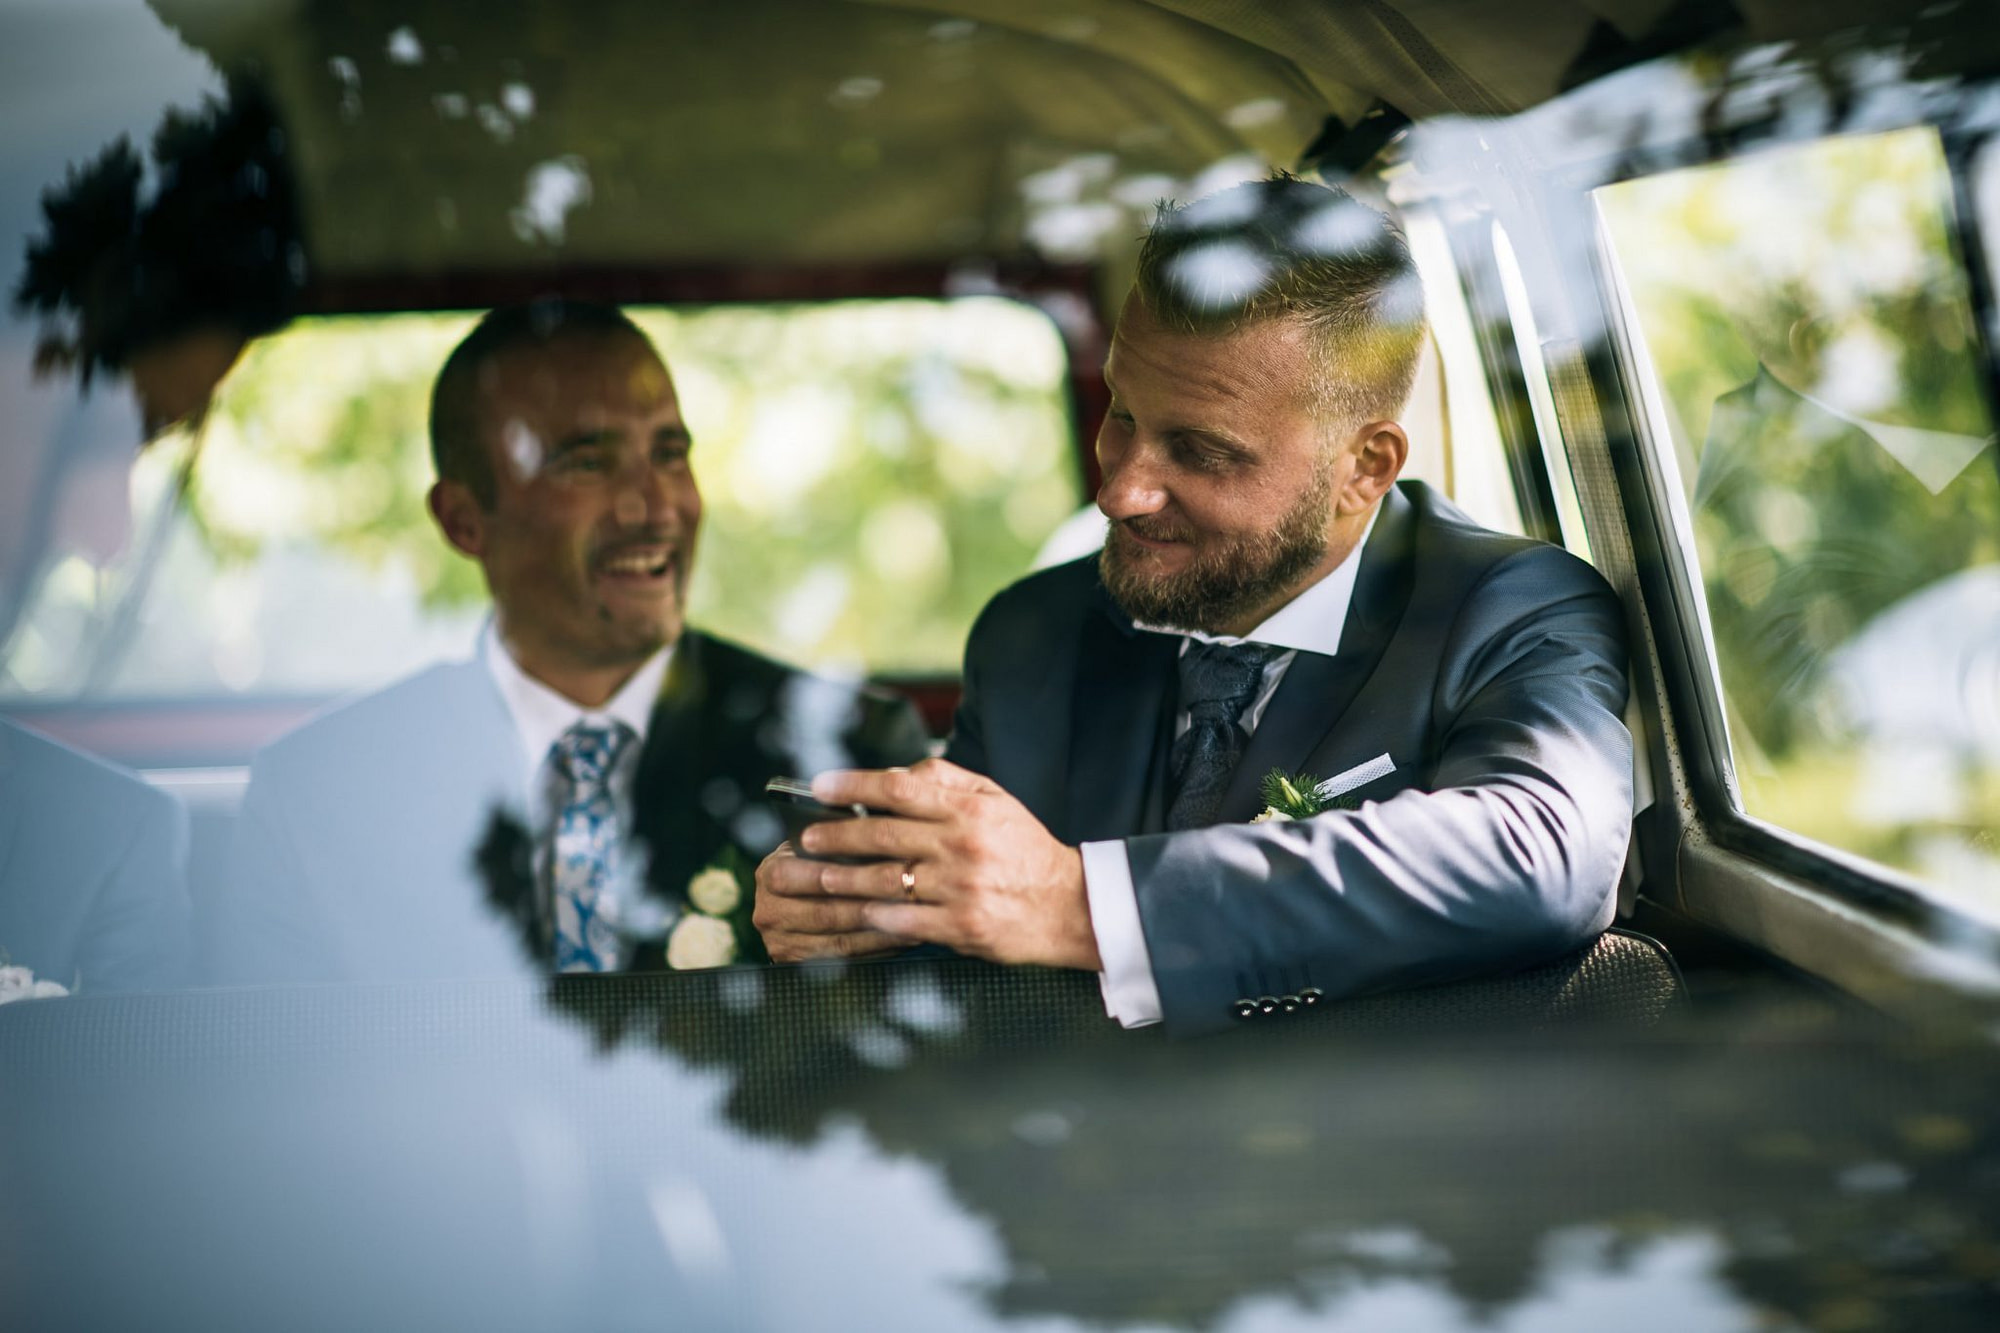 lo sposo si scatta un selfie nel furgoncino insieme all'amico